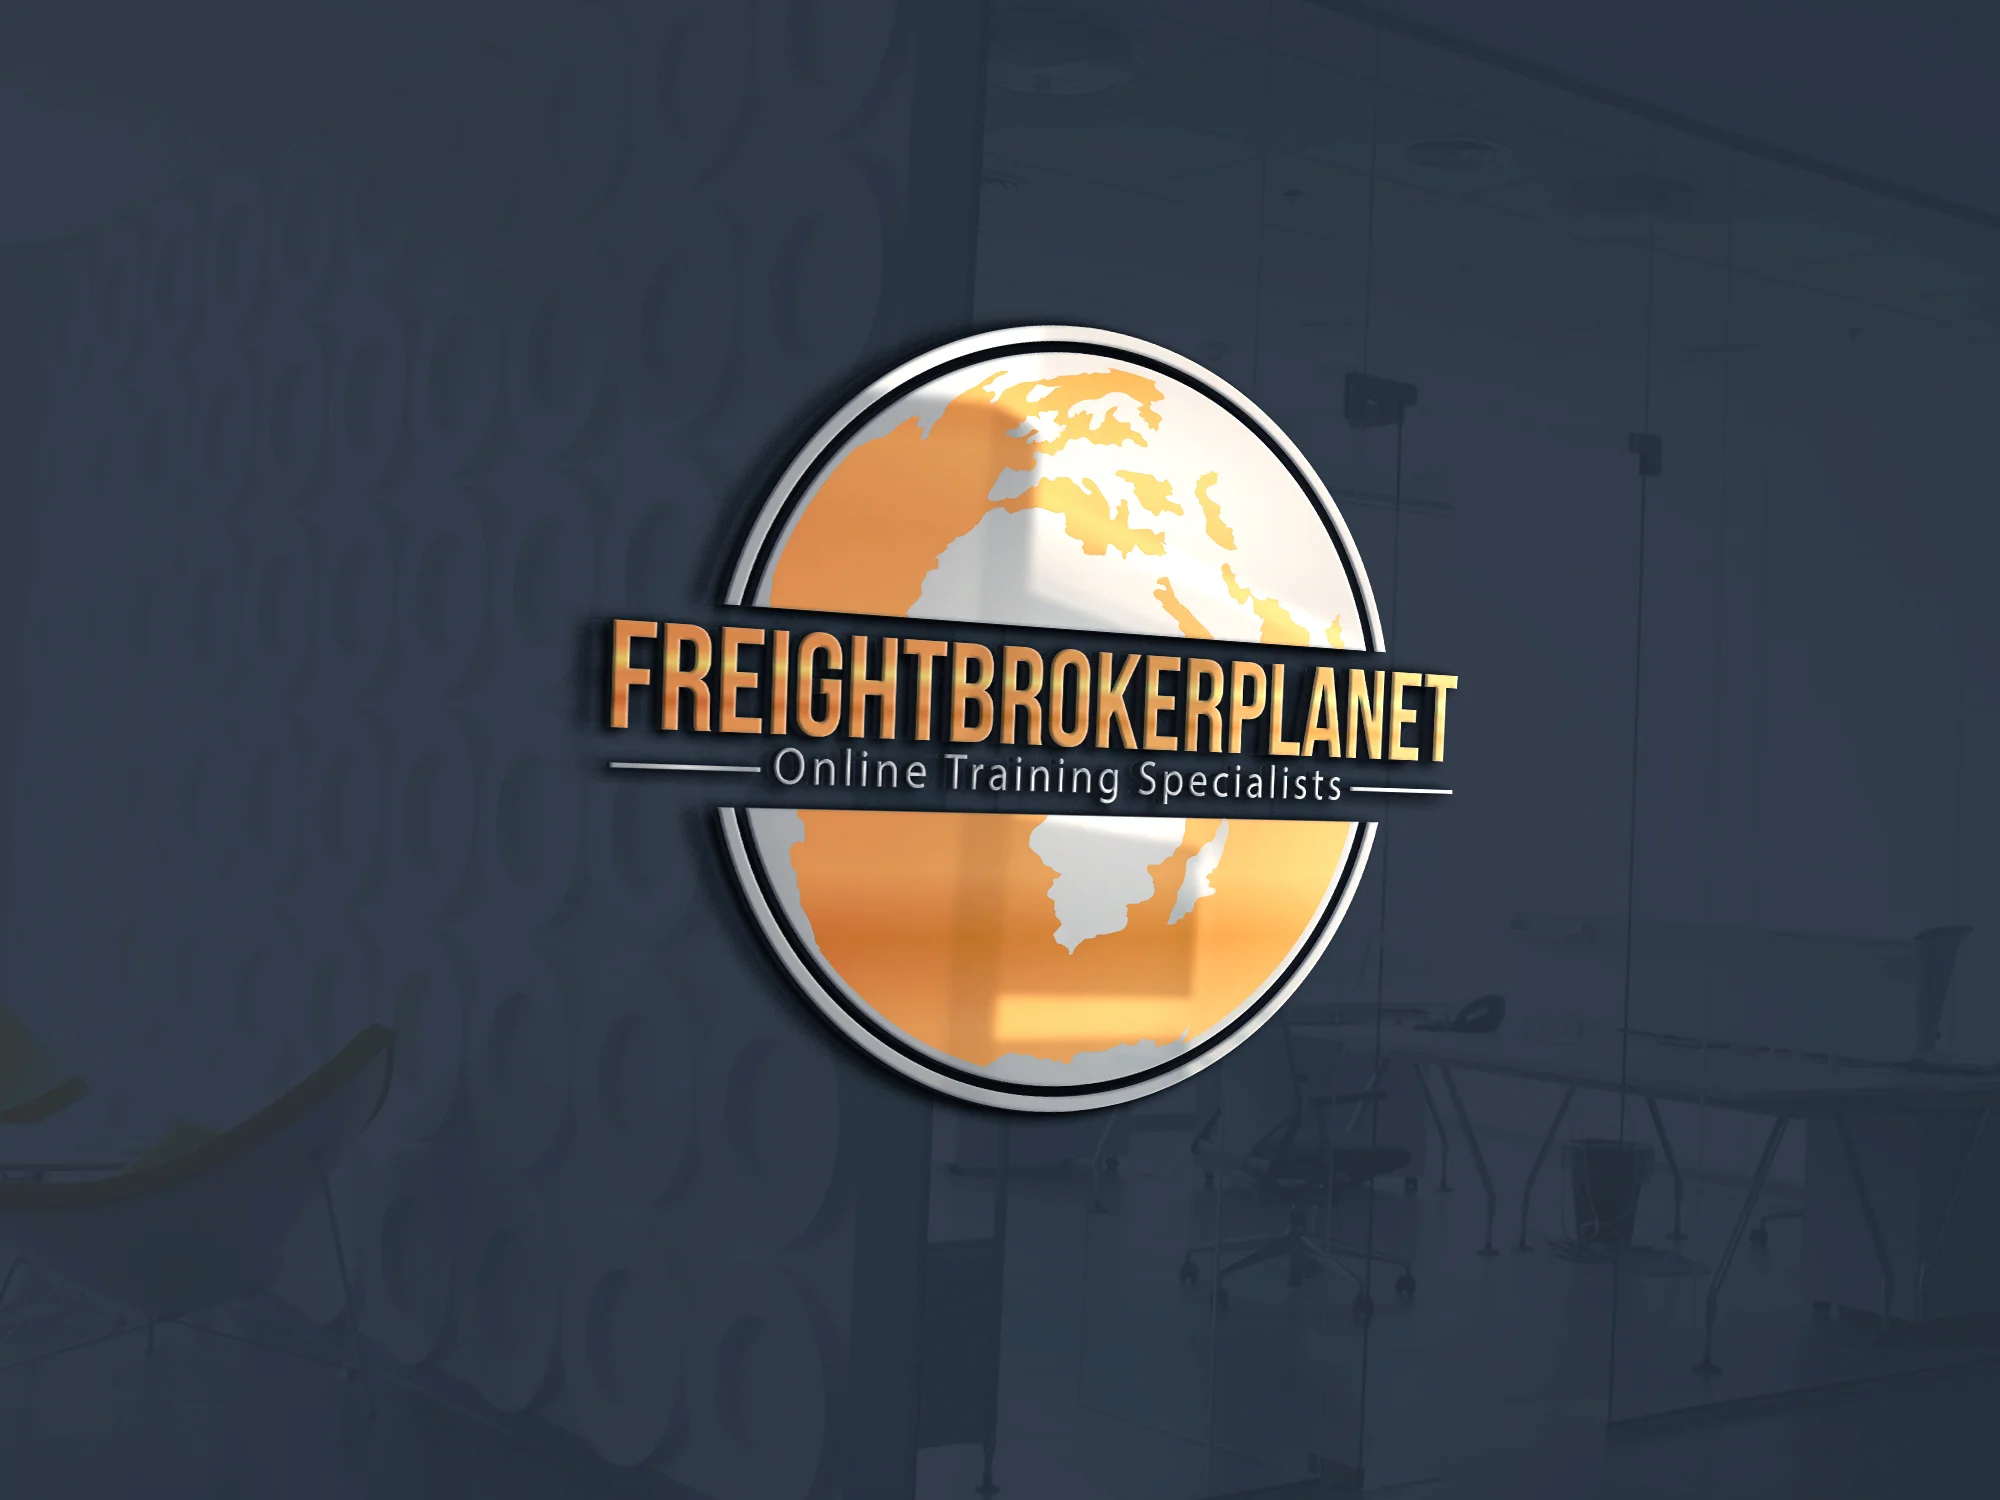 Freight broker planet logo